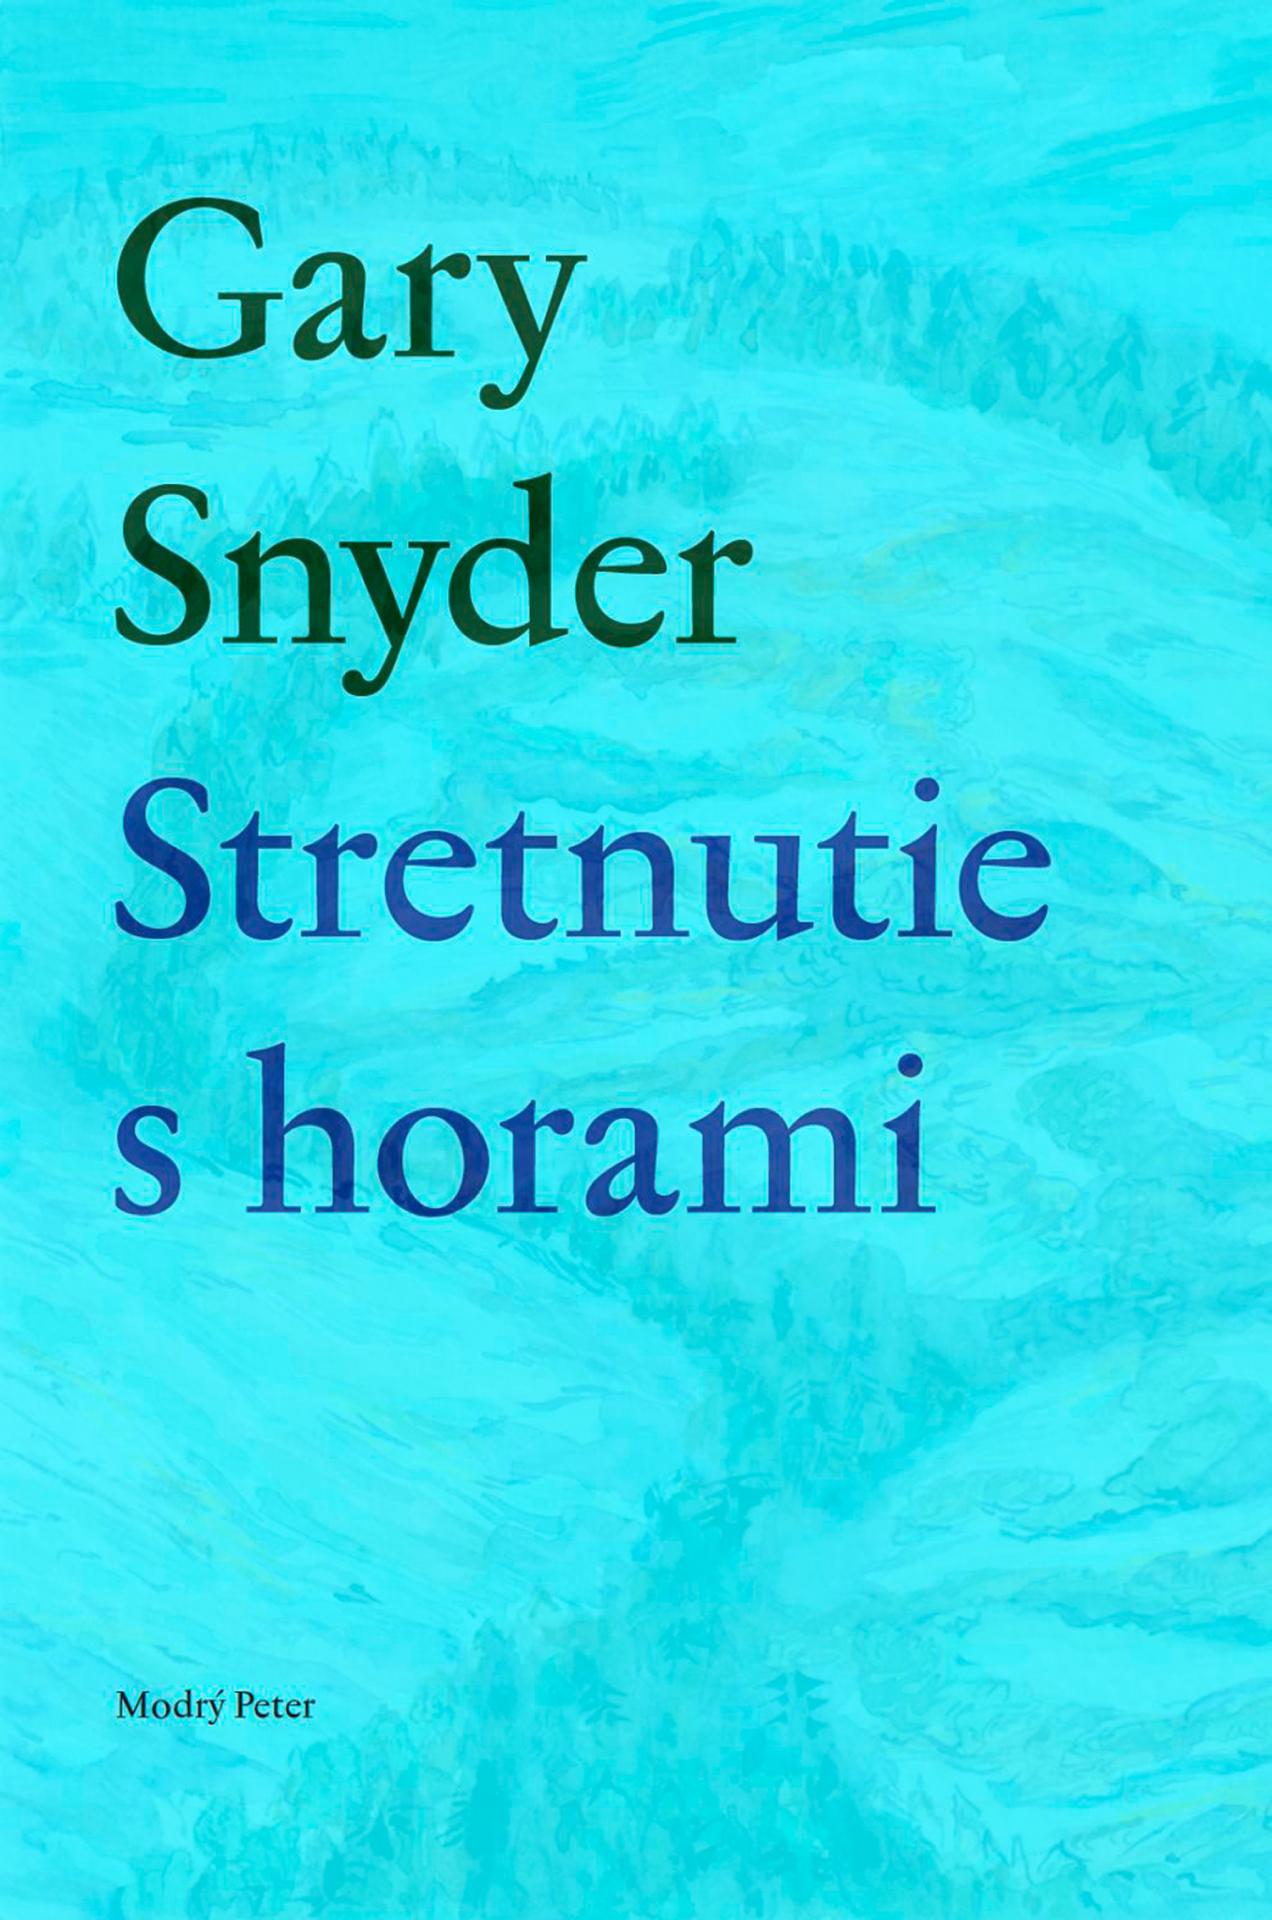 Gary Snyder: Stretnutie s horami Výber z poézie zo súborného diela Collected Poems preložil Marián Andričík, ktorý je tiež autorom kalendária, poznámok, vysvetliviek a doslovu. Vydal Modrý Peter v roku 2023.